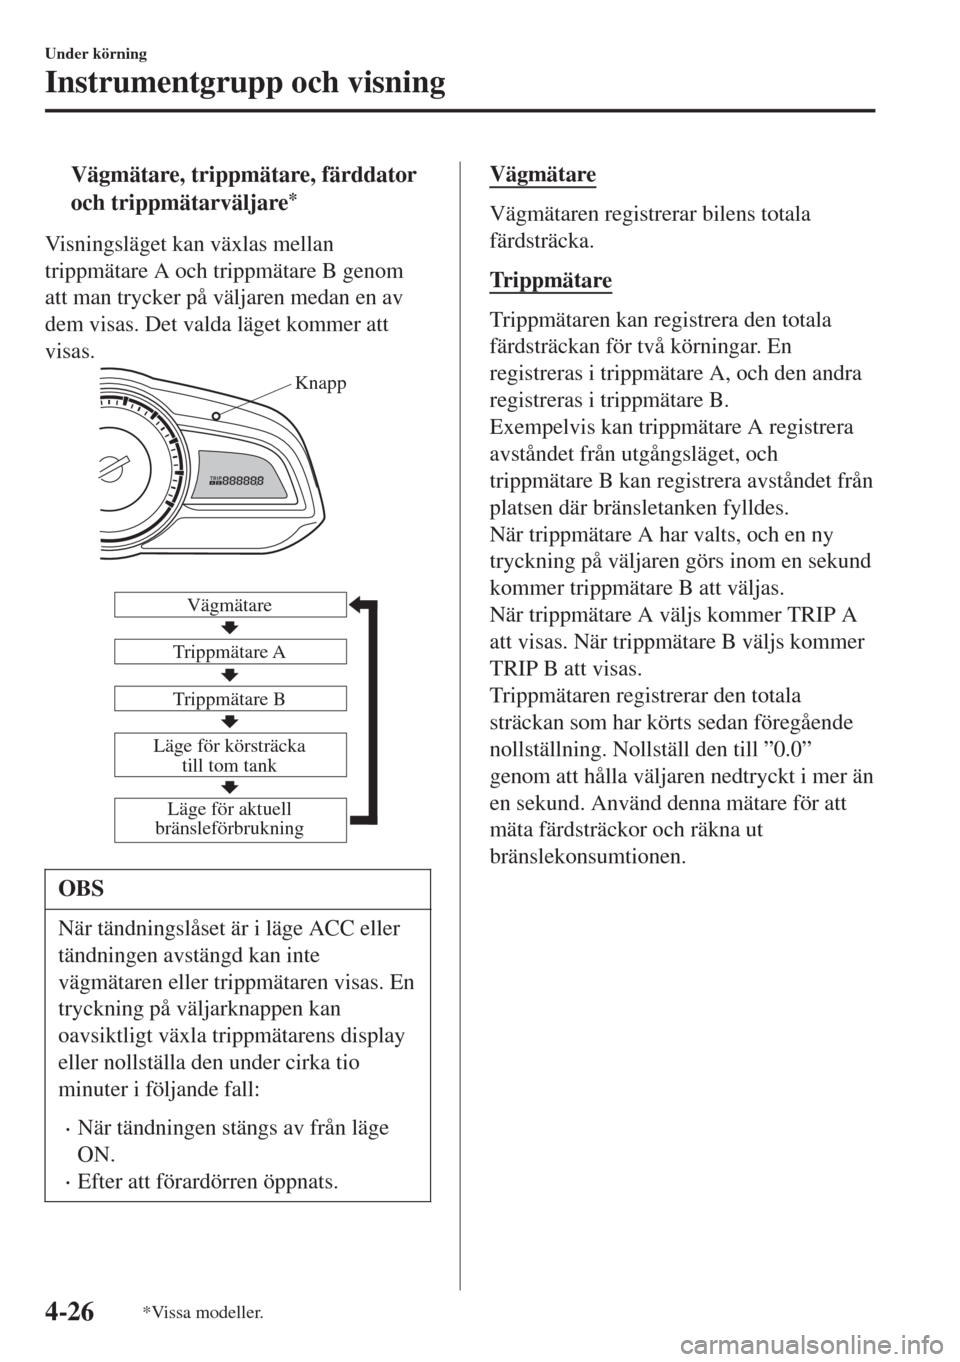 MAZDA MODEL CX-3 2015  Ägarmanual (in Swedish) tVägmätare, trippmätare, färddator
och trippmätarväljare
*
Visningsläget kan växlas mellan
trippmätare A och trippmätare B genom
att man trycker på väljaren medan en av
dem visas. Det vald